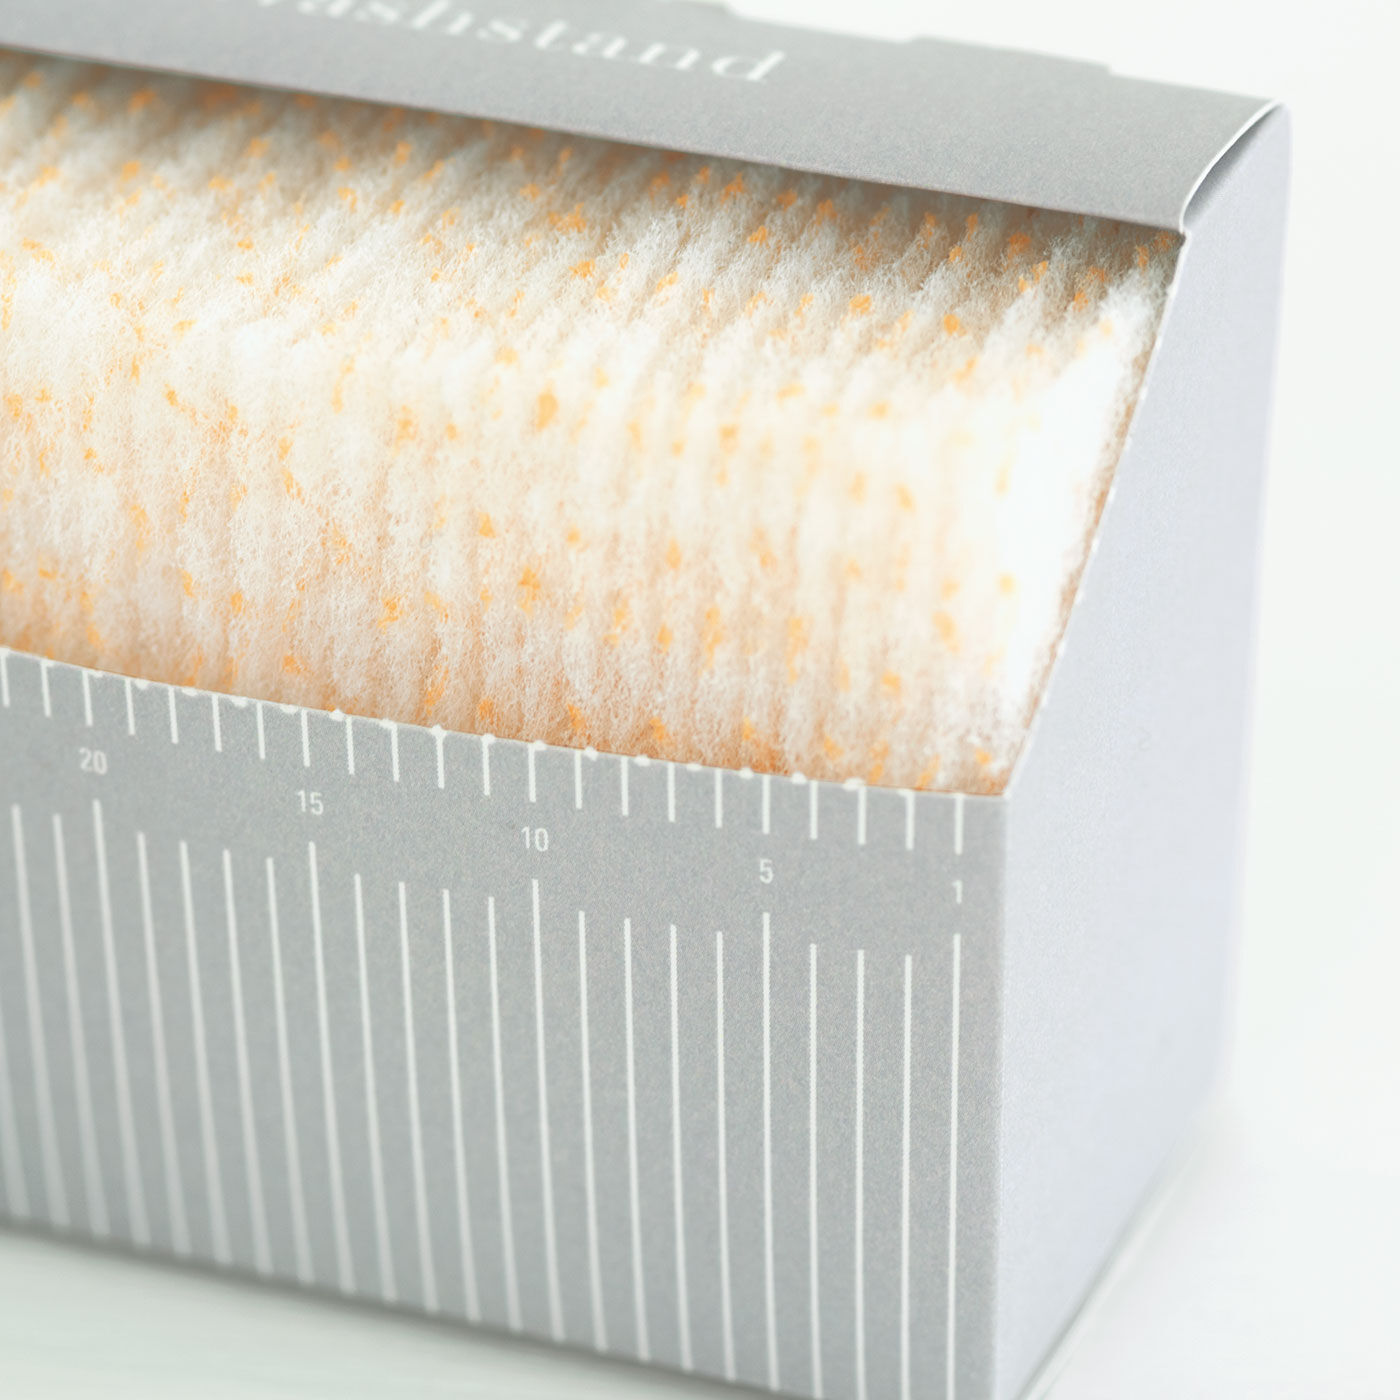 フェリシモの雑貨Kraso|1/d for Washstand 洗面台用ミニワイプの会|すき間に合わせて縦にも横にも置ける形状です。1ヵ月使い切りの30枚セット。